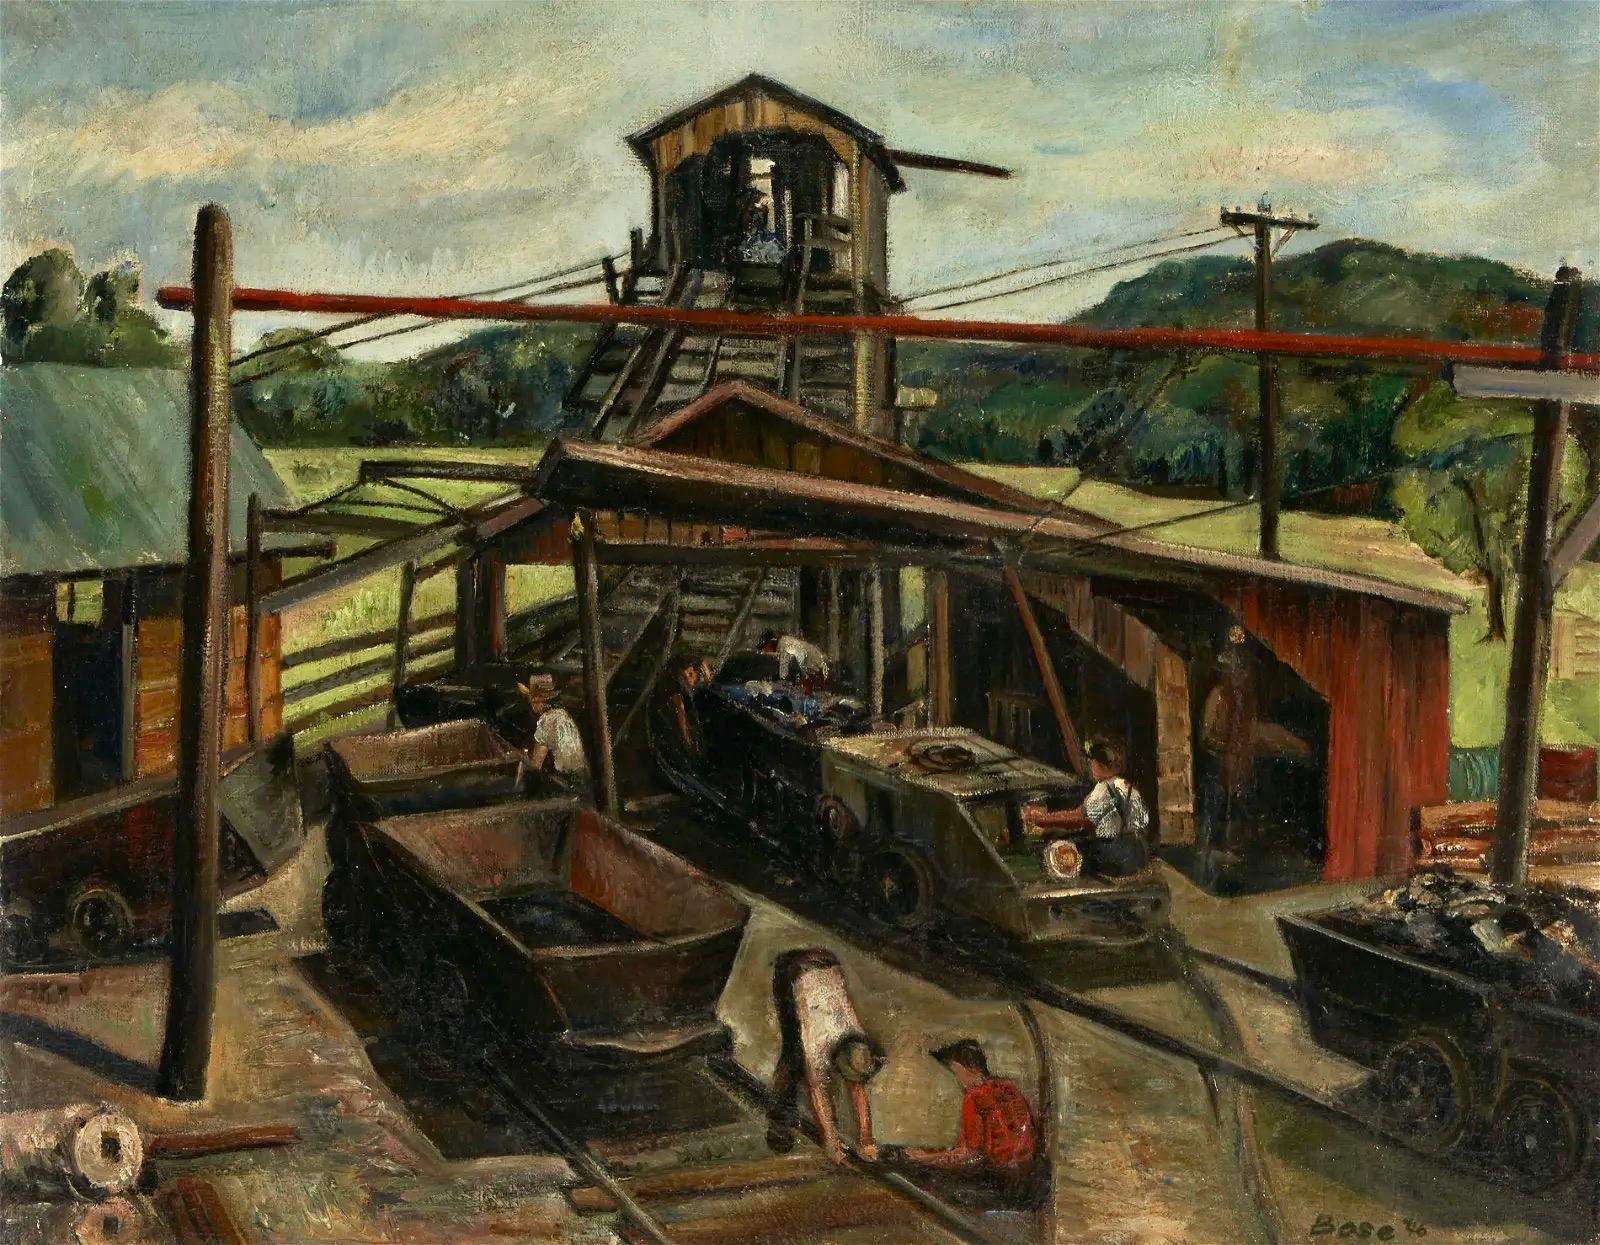 Figurative Painting Louis Bosa - Chemin de fer industriel WPA Scène américaine moderne du milieu du 20e siècle Réalisme rural